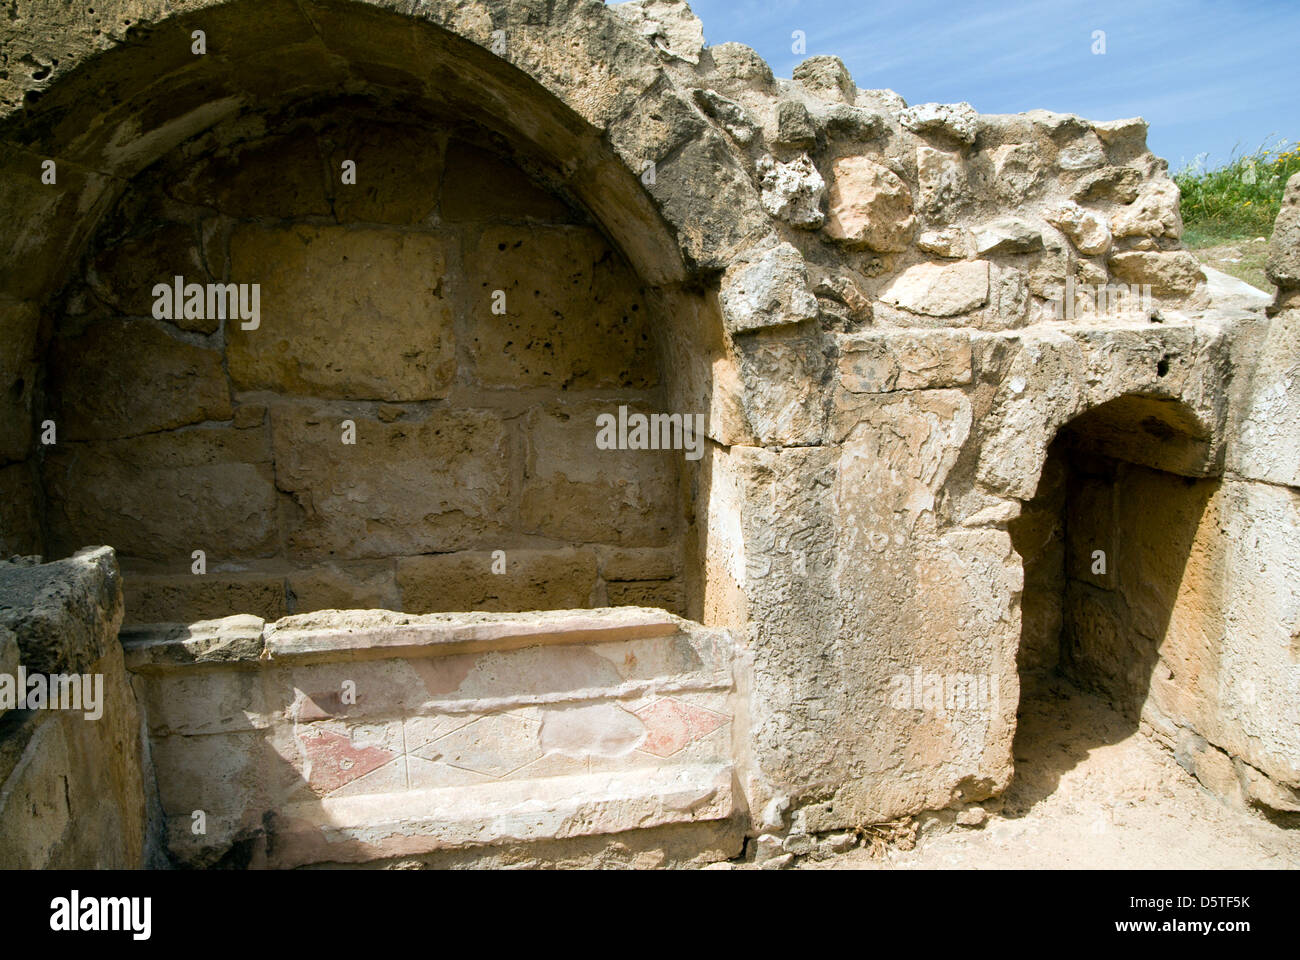 Rocce scolpite degli edifici la guarnigione camp parco archeologico di paphos Cipro Foto Stock